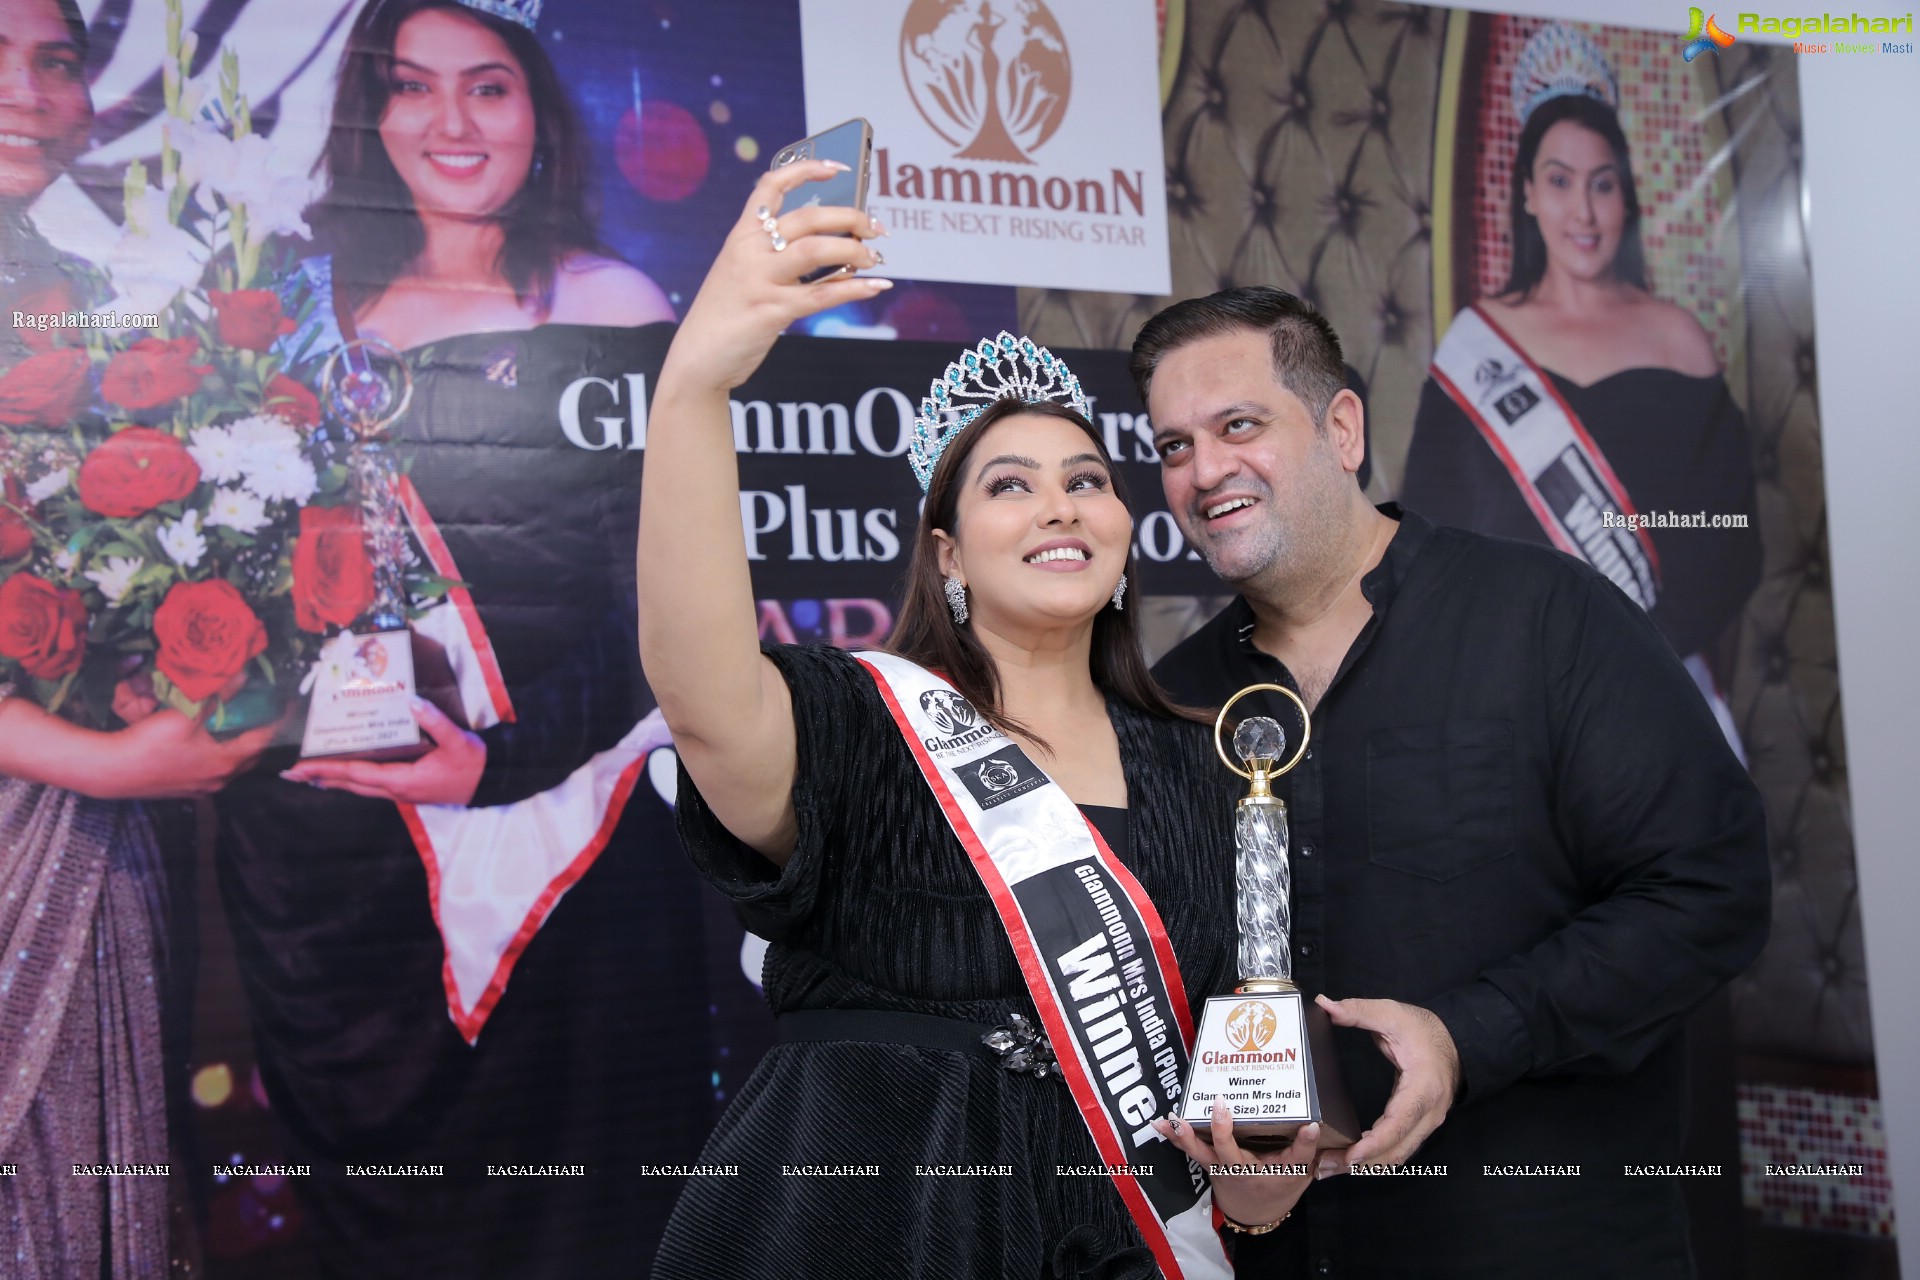 Congratulating Samaira I Wallani On Winning GlammOnn Mrs.India 2021 Plus Size Title